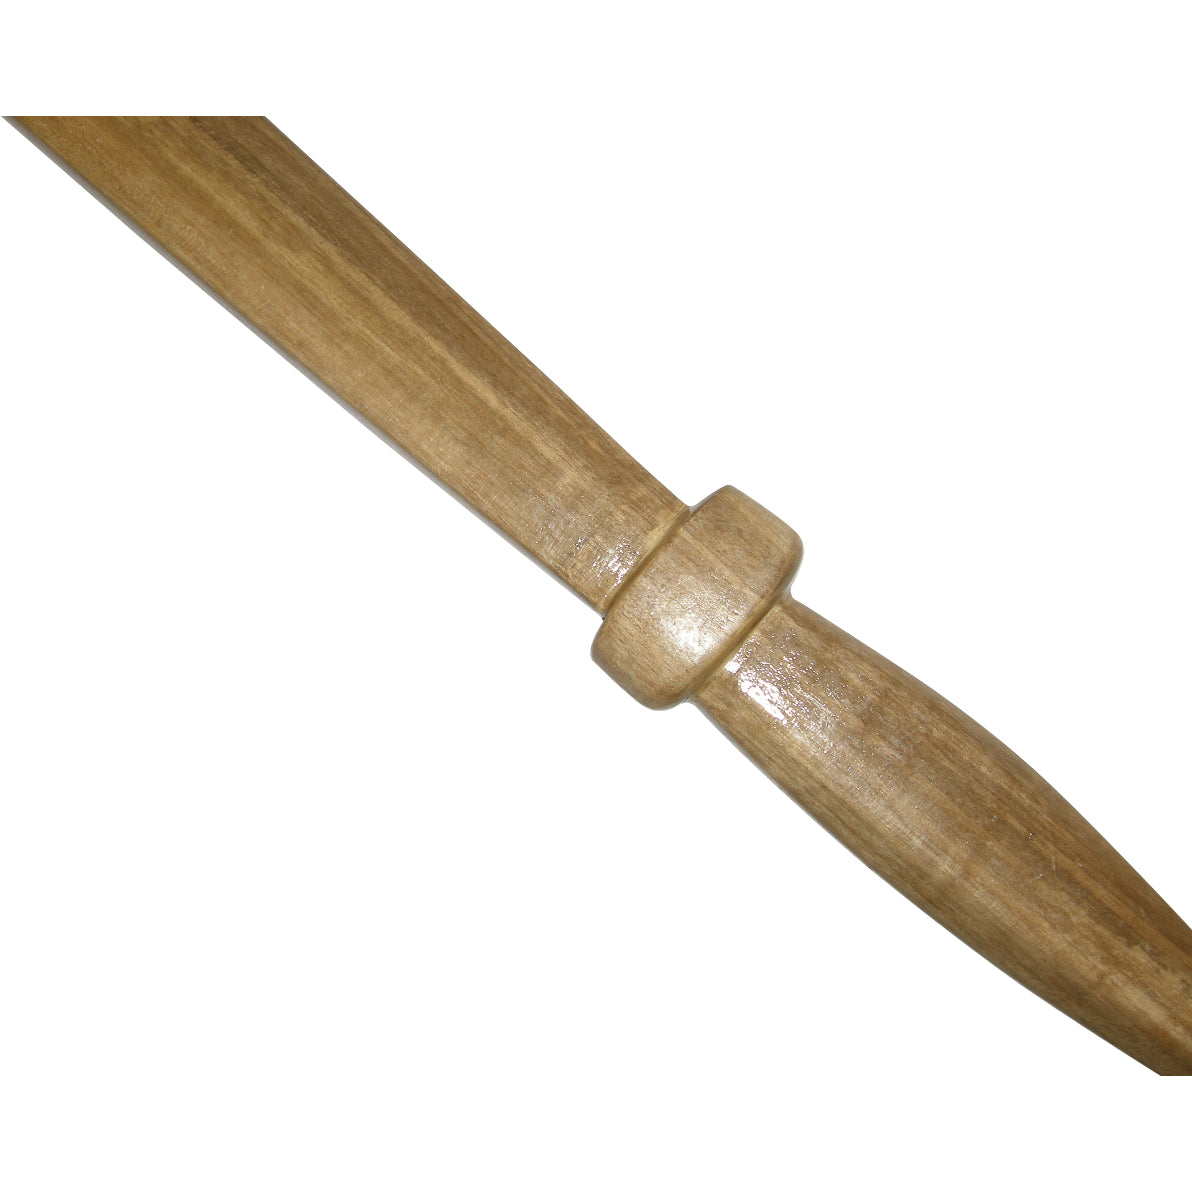 Filipino Hardwood Practice Kampilan Training Sword